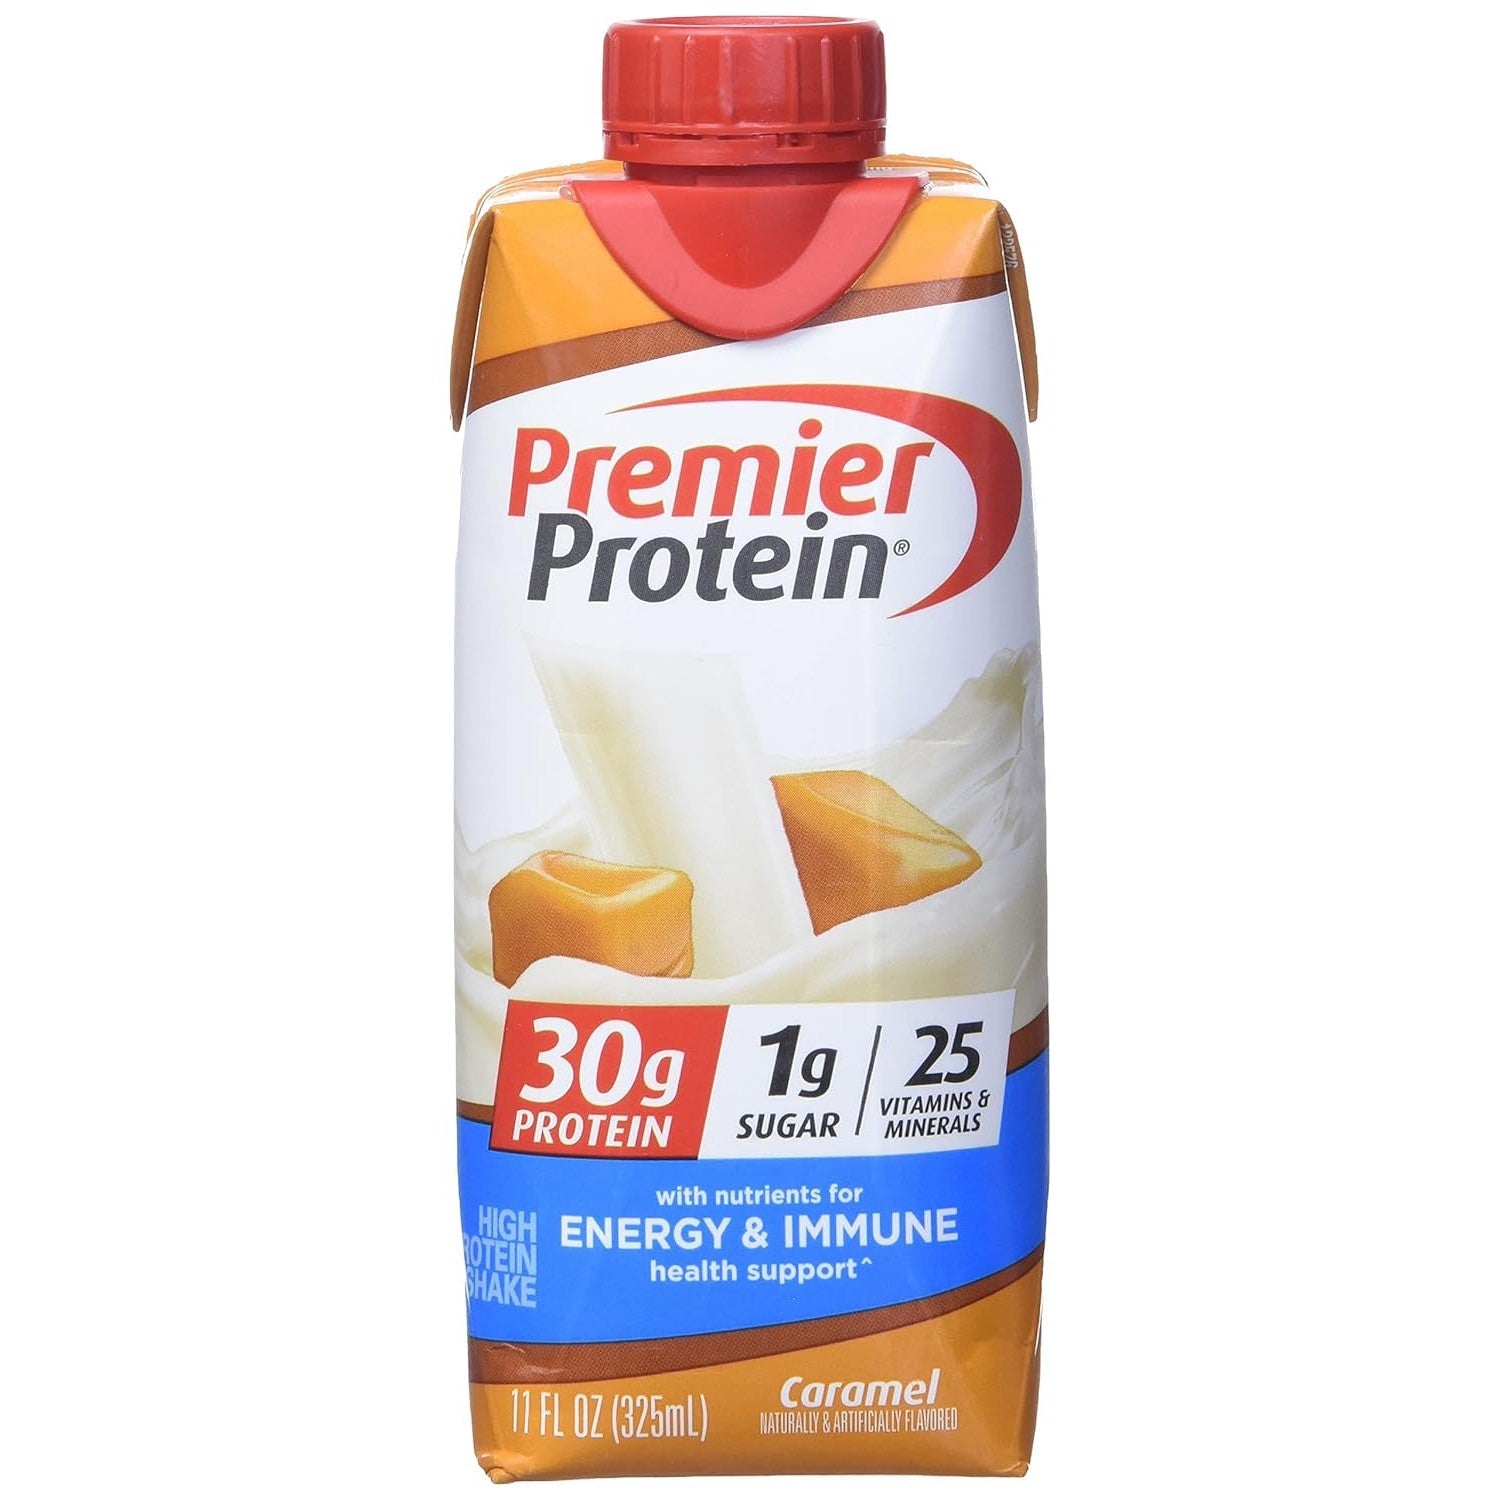 Premier Protein Shake 30g Protein 1g Sugar Caramel 325ml